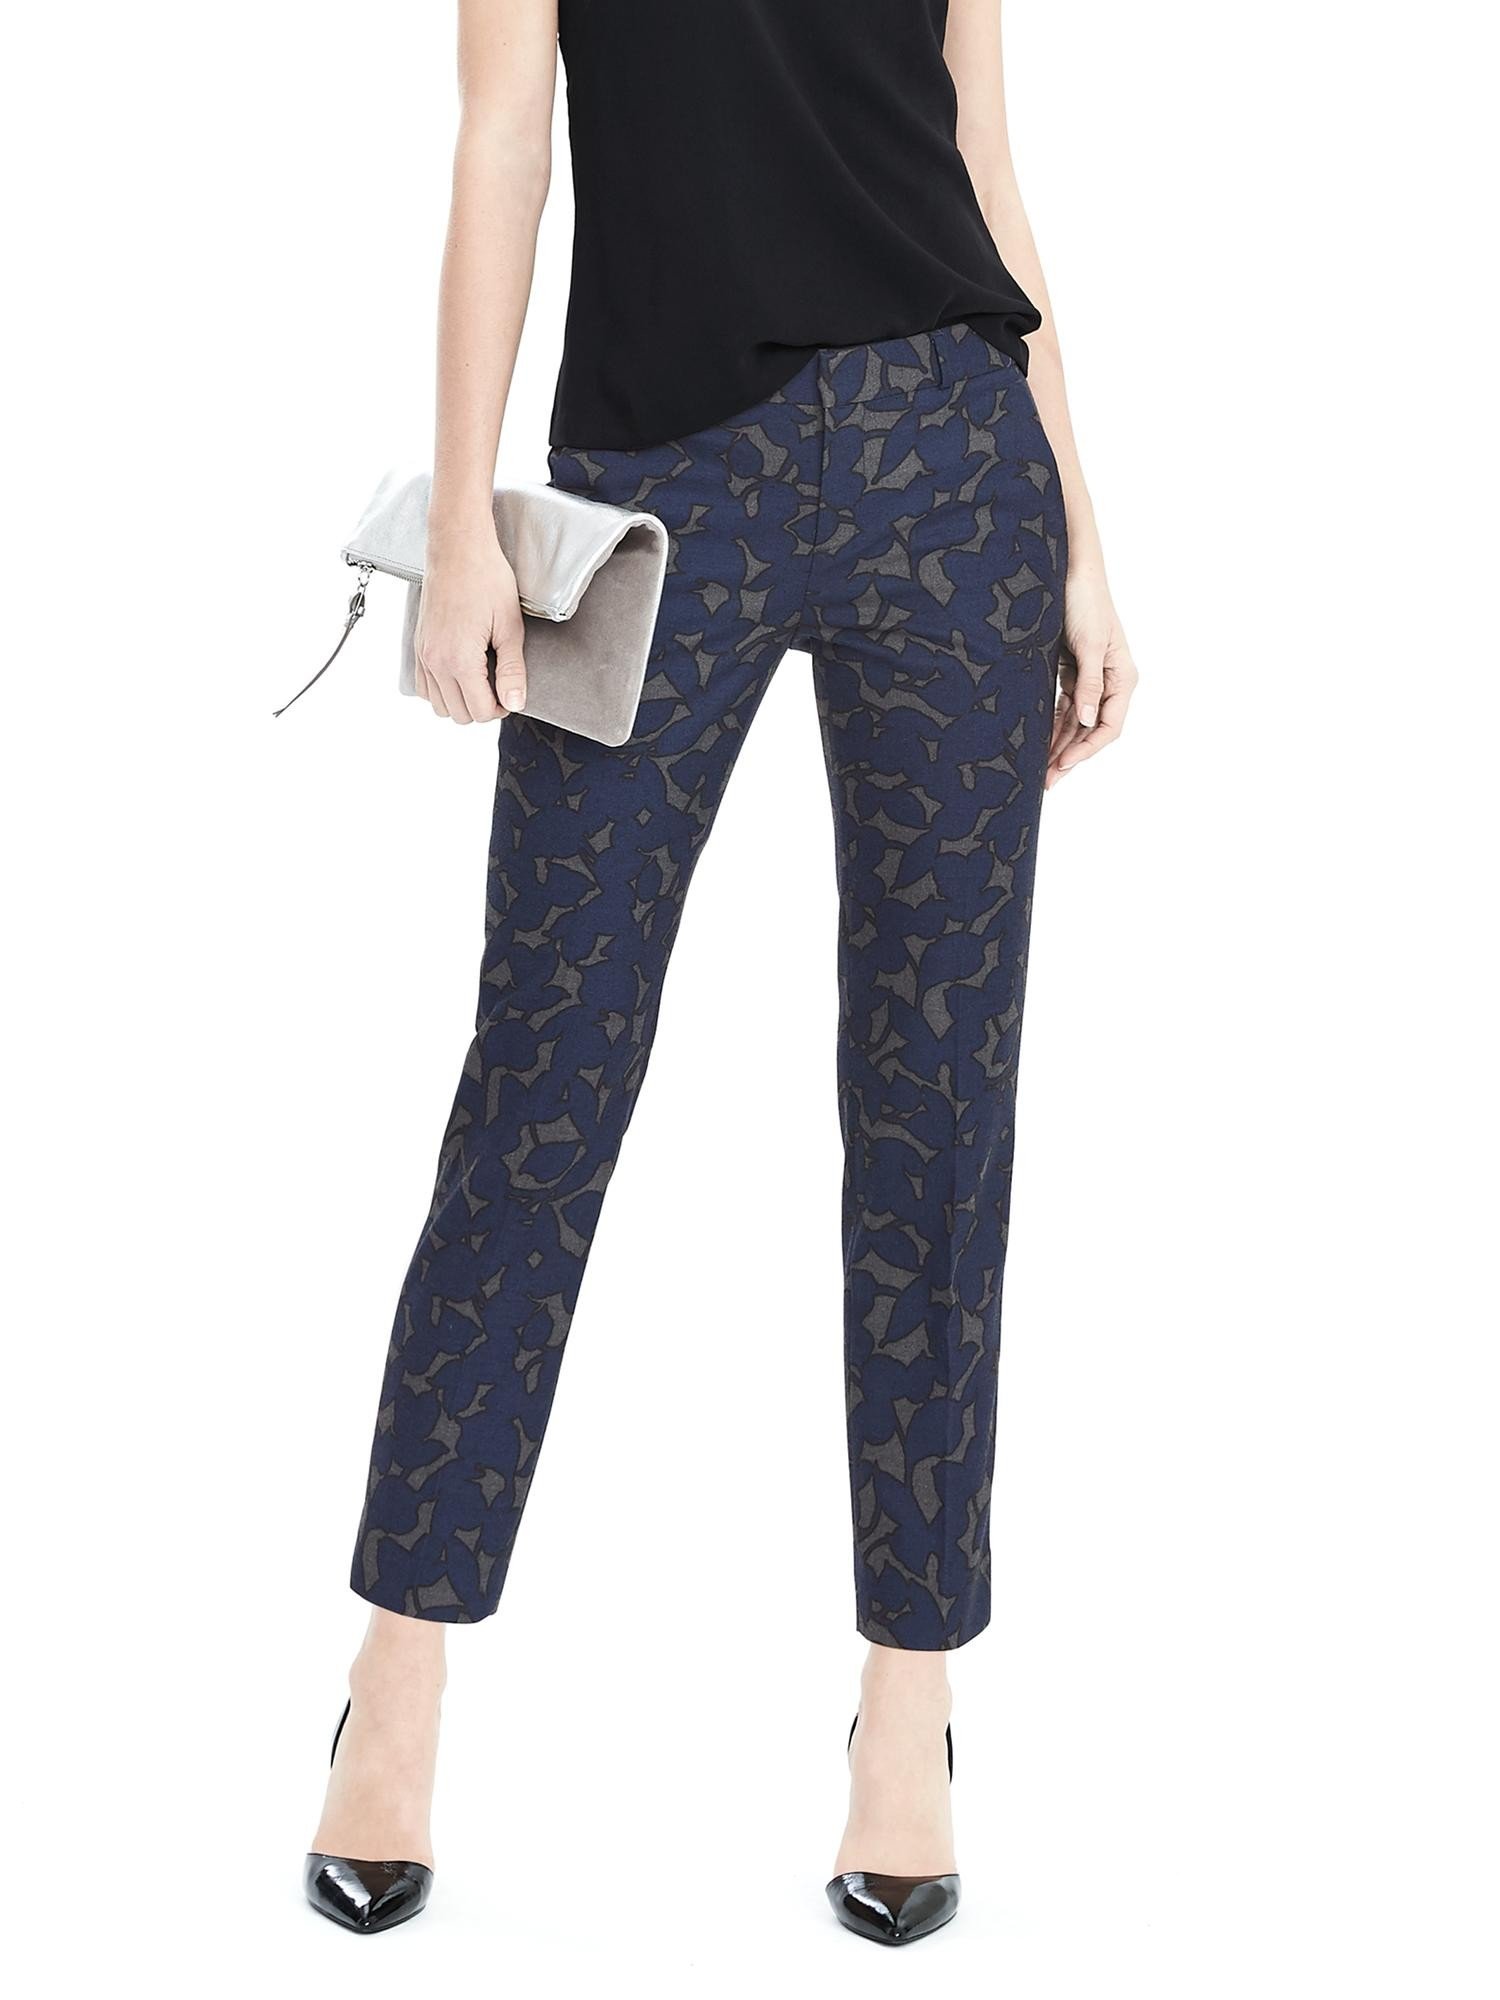 Avery-Fit yün karışımlı çiçek desenli pantolon product image